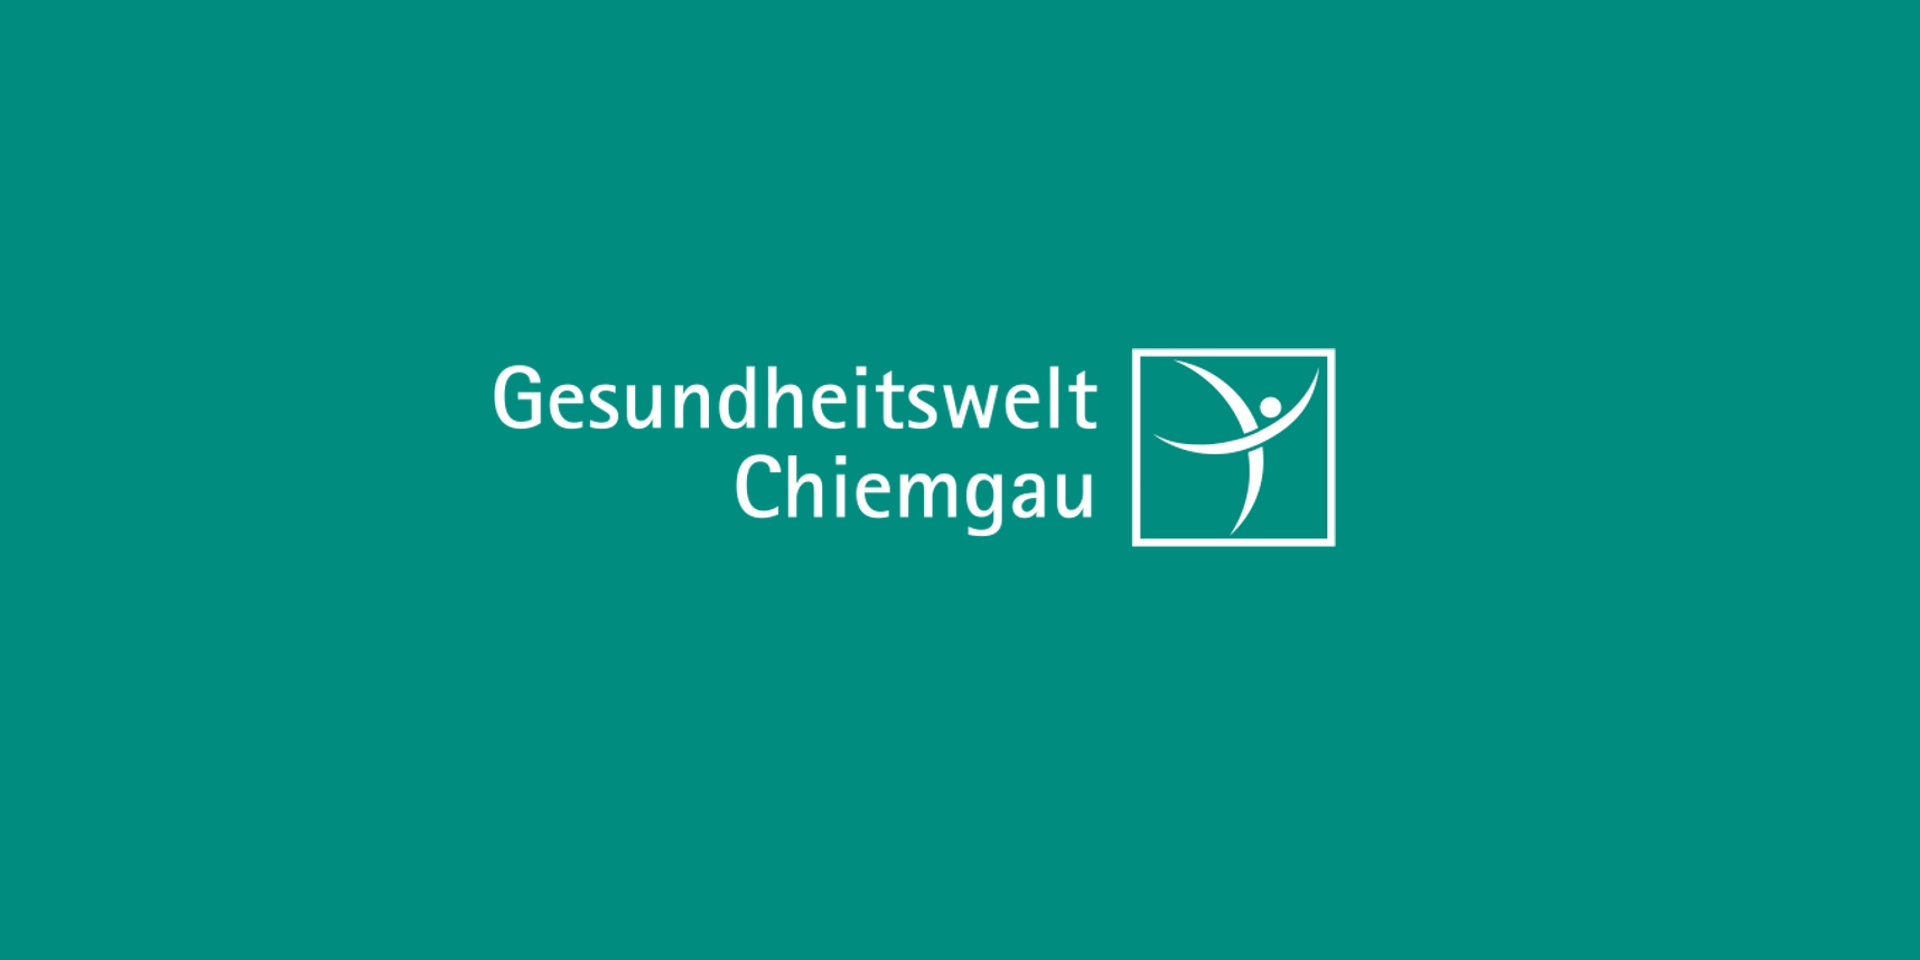 Die Gesundheitswelt Chiemgau AG - Modernste Prävention unter ganzheitlicher Betrachtungsweise 